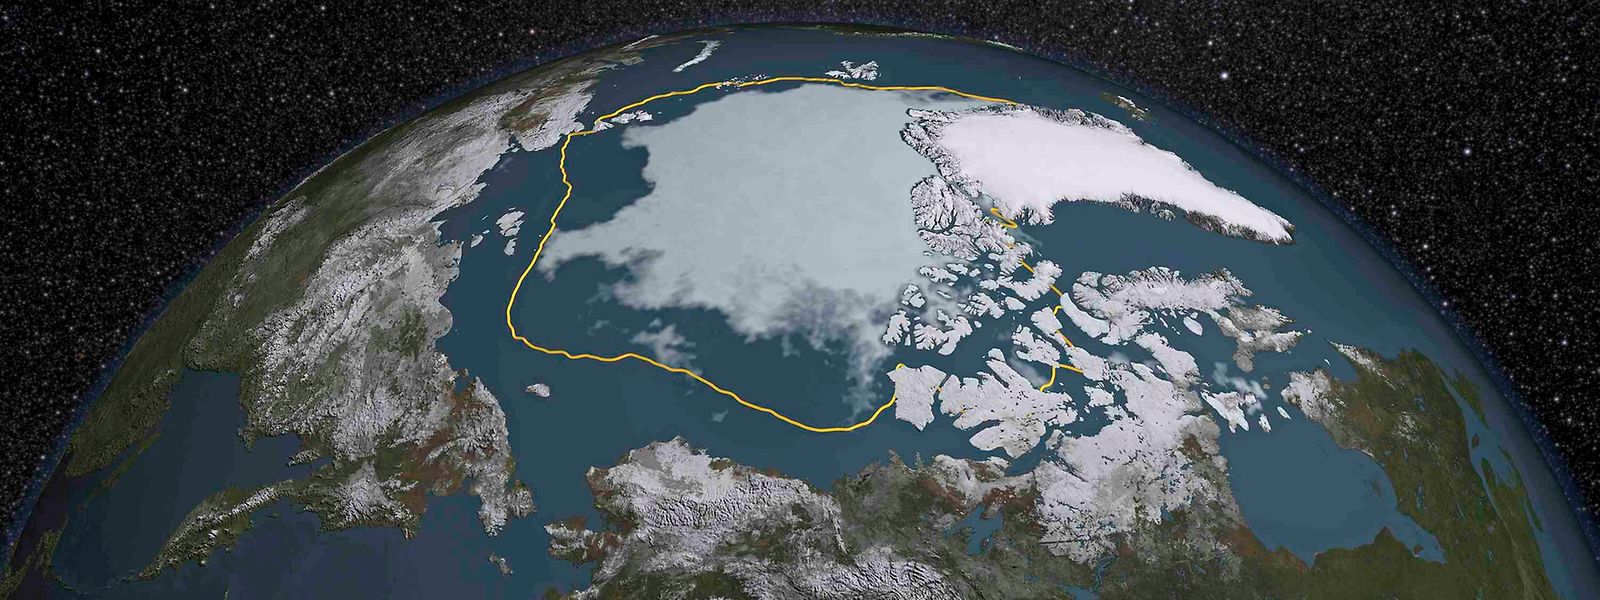  Es gibt Befürchtungen,dass der Arktische Ozean innerhalb der nächsten Jahrzehnte - so gegen 2040 - im Sommer eisfrei sein könnte. 